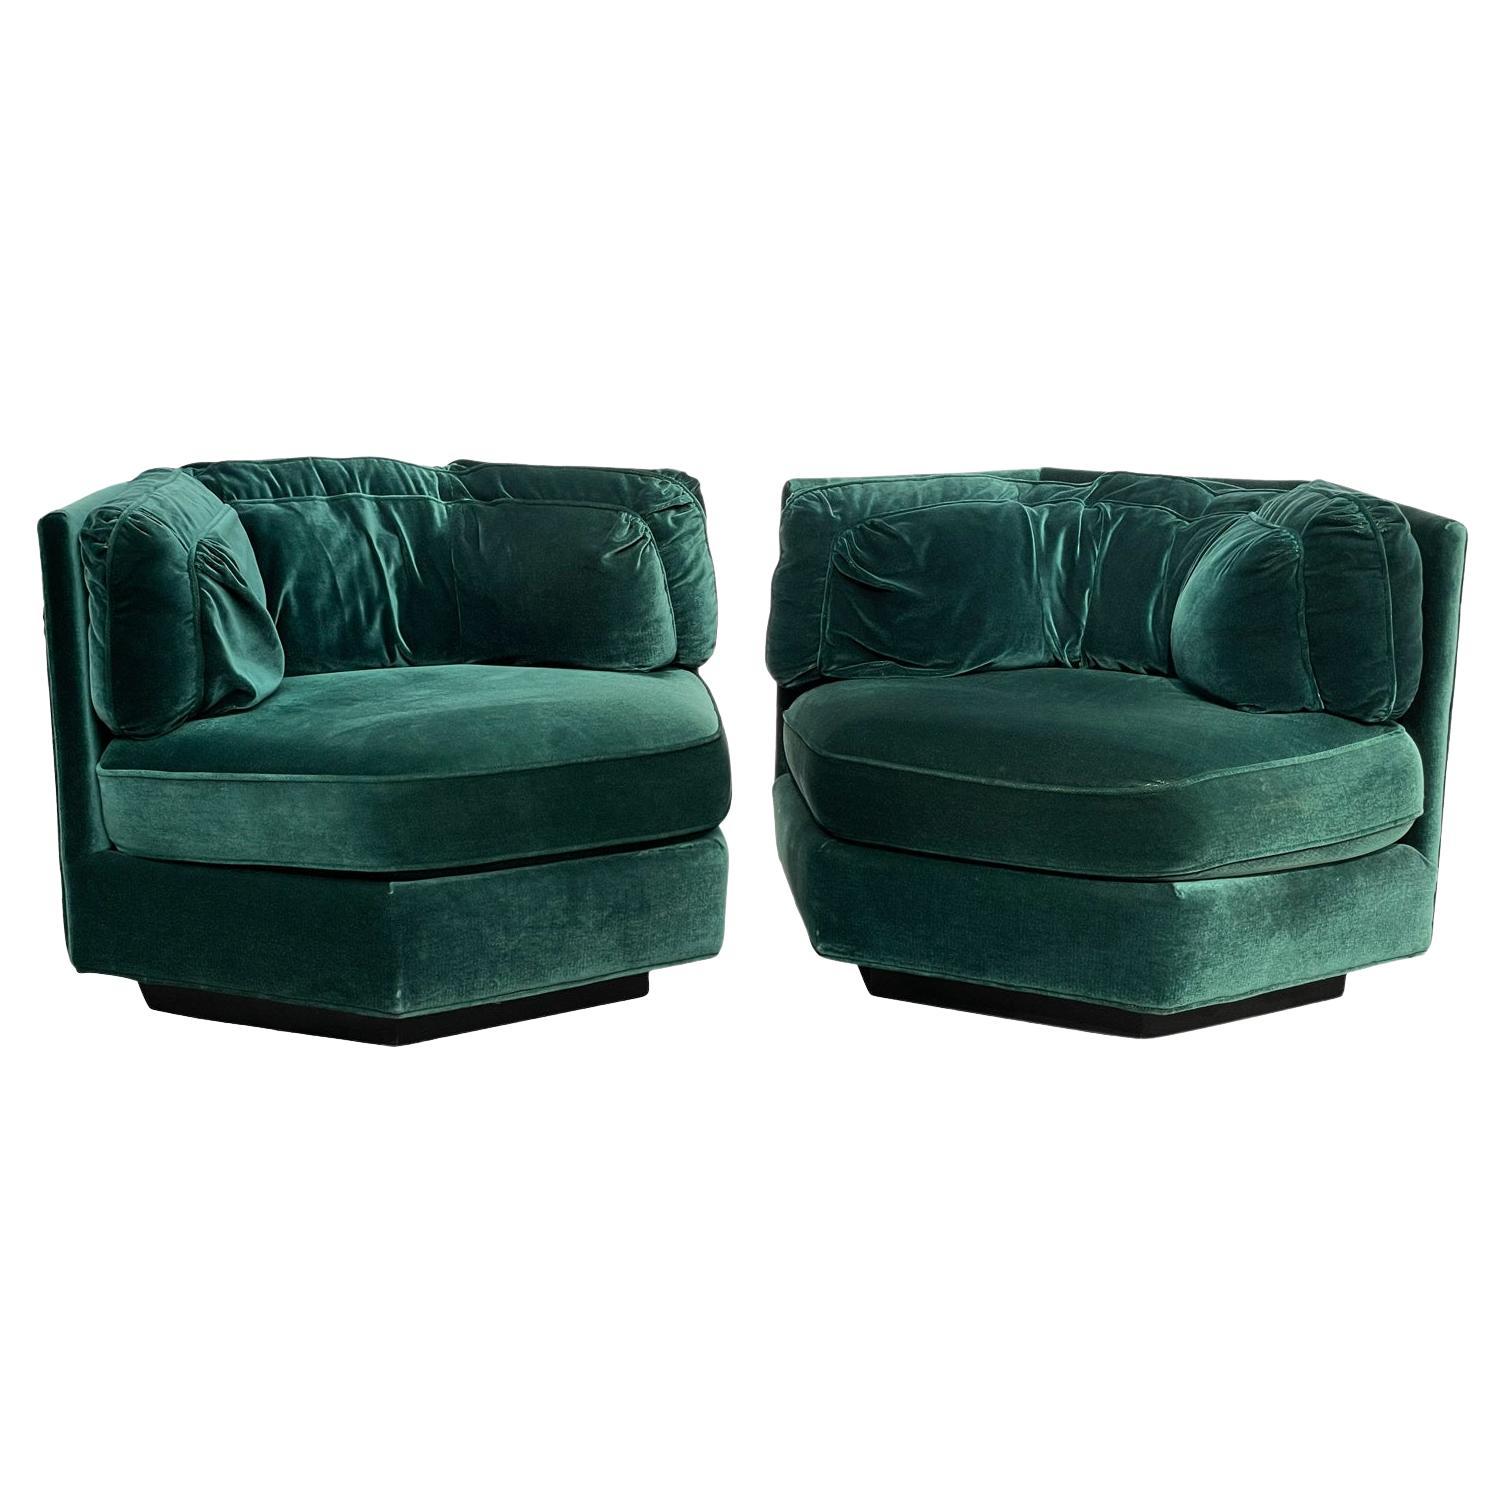 1970s Hexagonal Green Velvet Sofa Club Chair W/ Plinth Base-A Pair